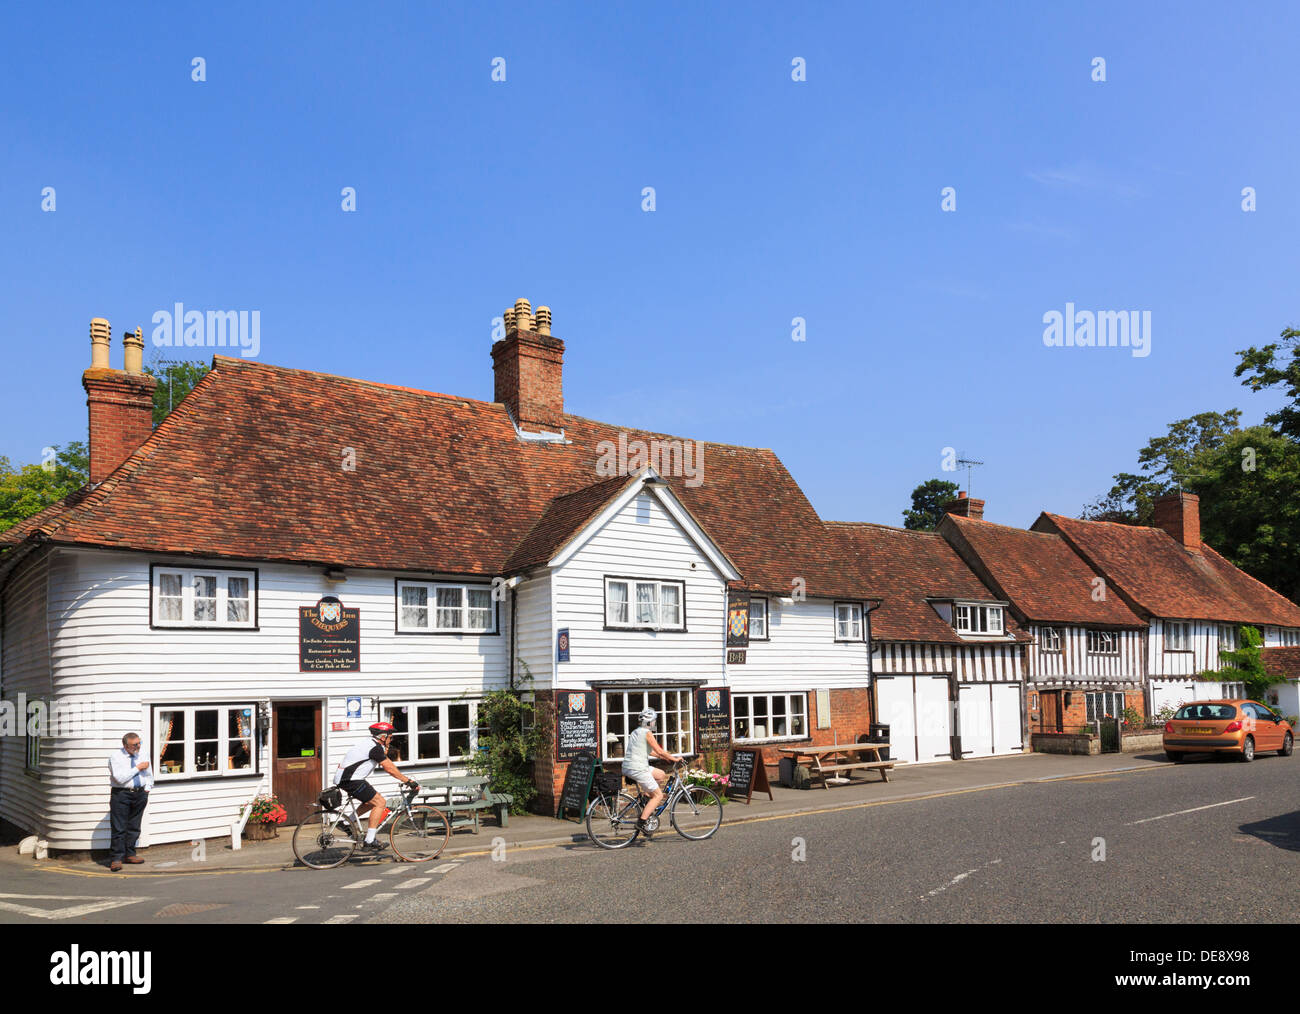 Menschen Radfahrer außerhalb des Chequers Inn alten 14. Jahrhundert Coaching Inn Pub in malerischen englischen Dorf. The Street Smarden Kent England Großbritannien Stockfoto